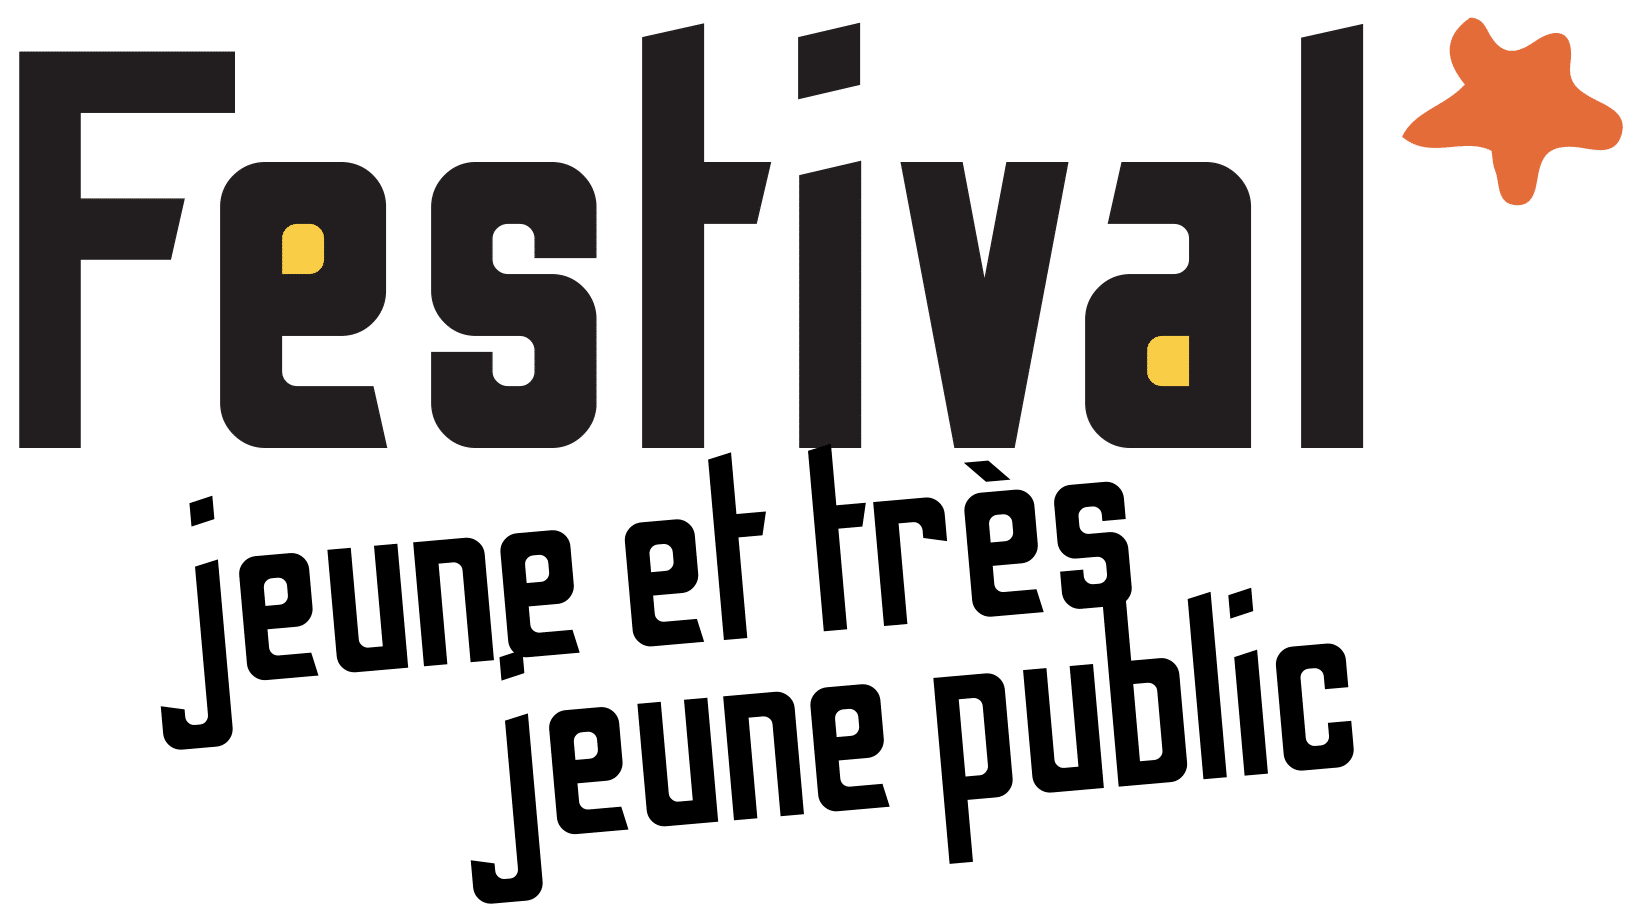 Festival Jeune et Très Jeune Public